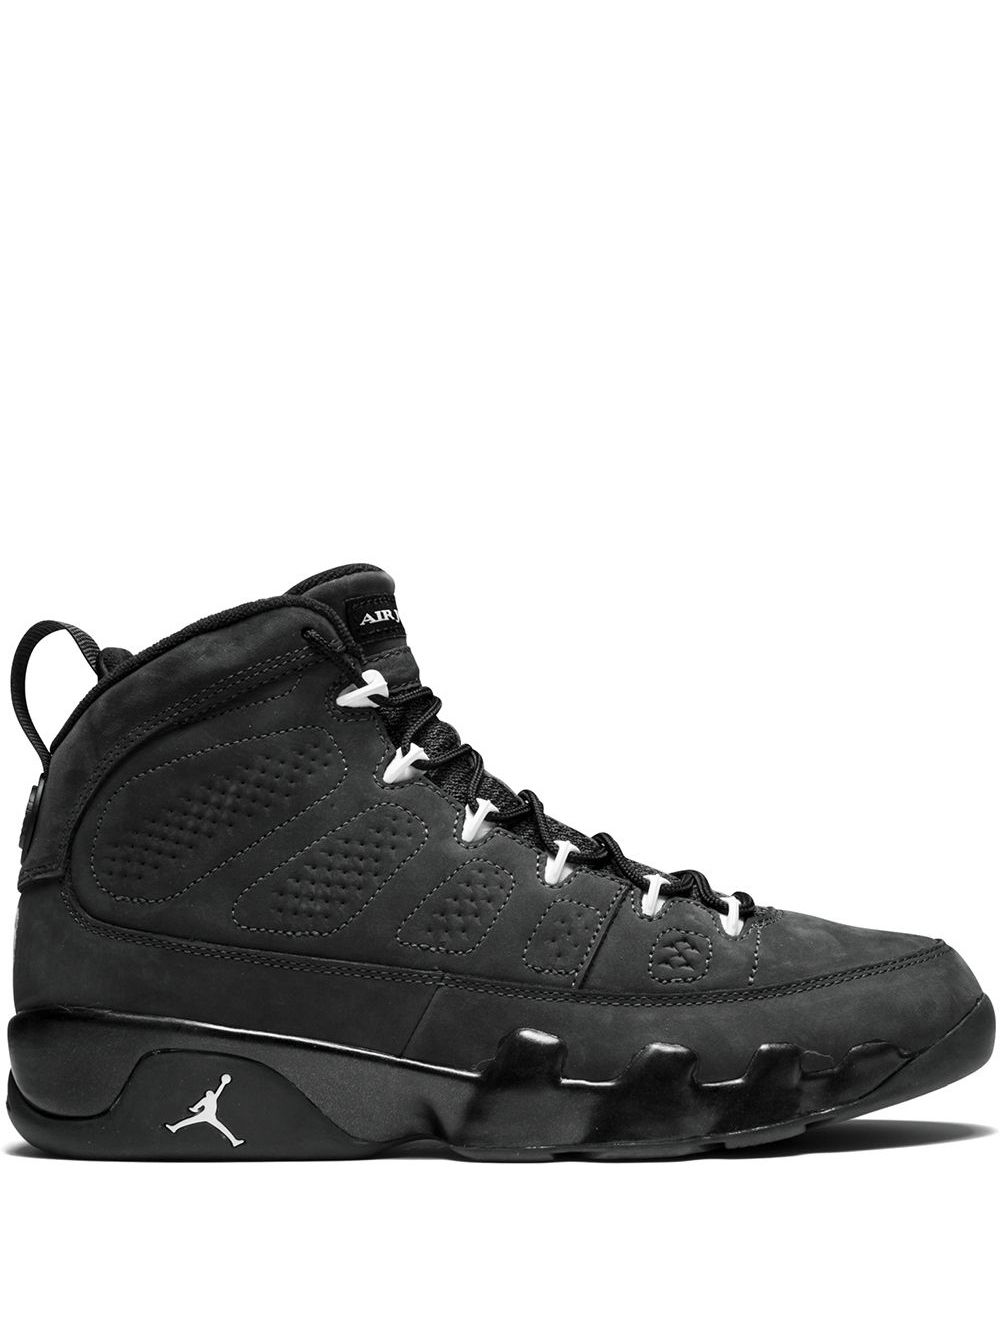 Jordan Air Jordan 9 Retro "Anthracite" sneakers - Black